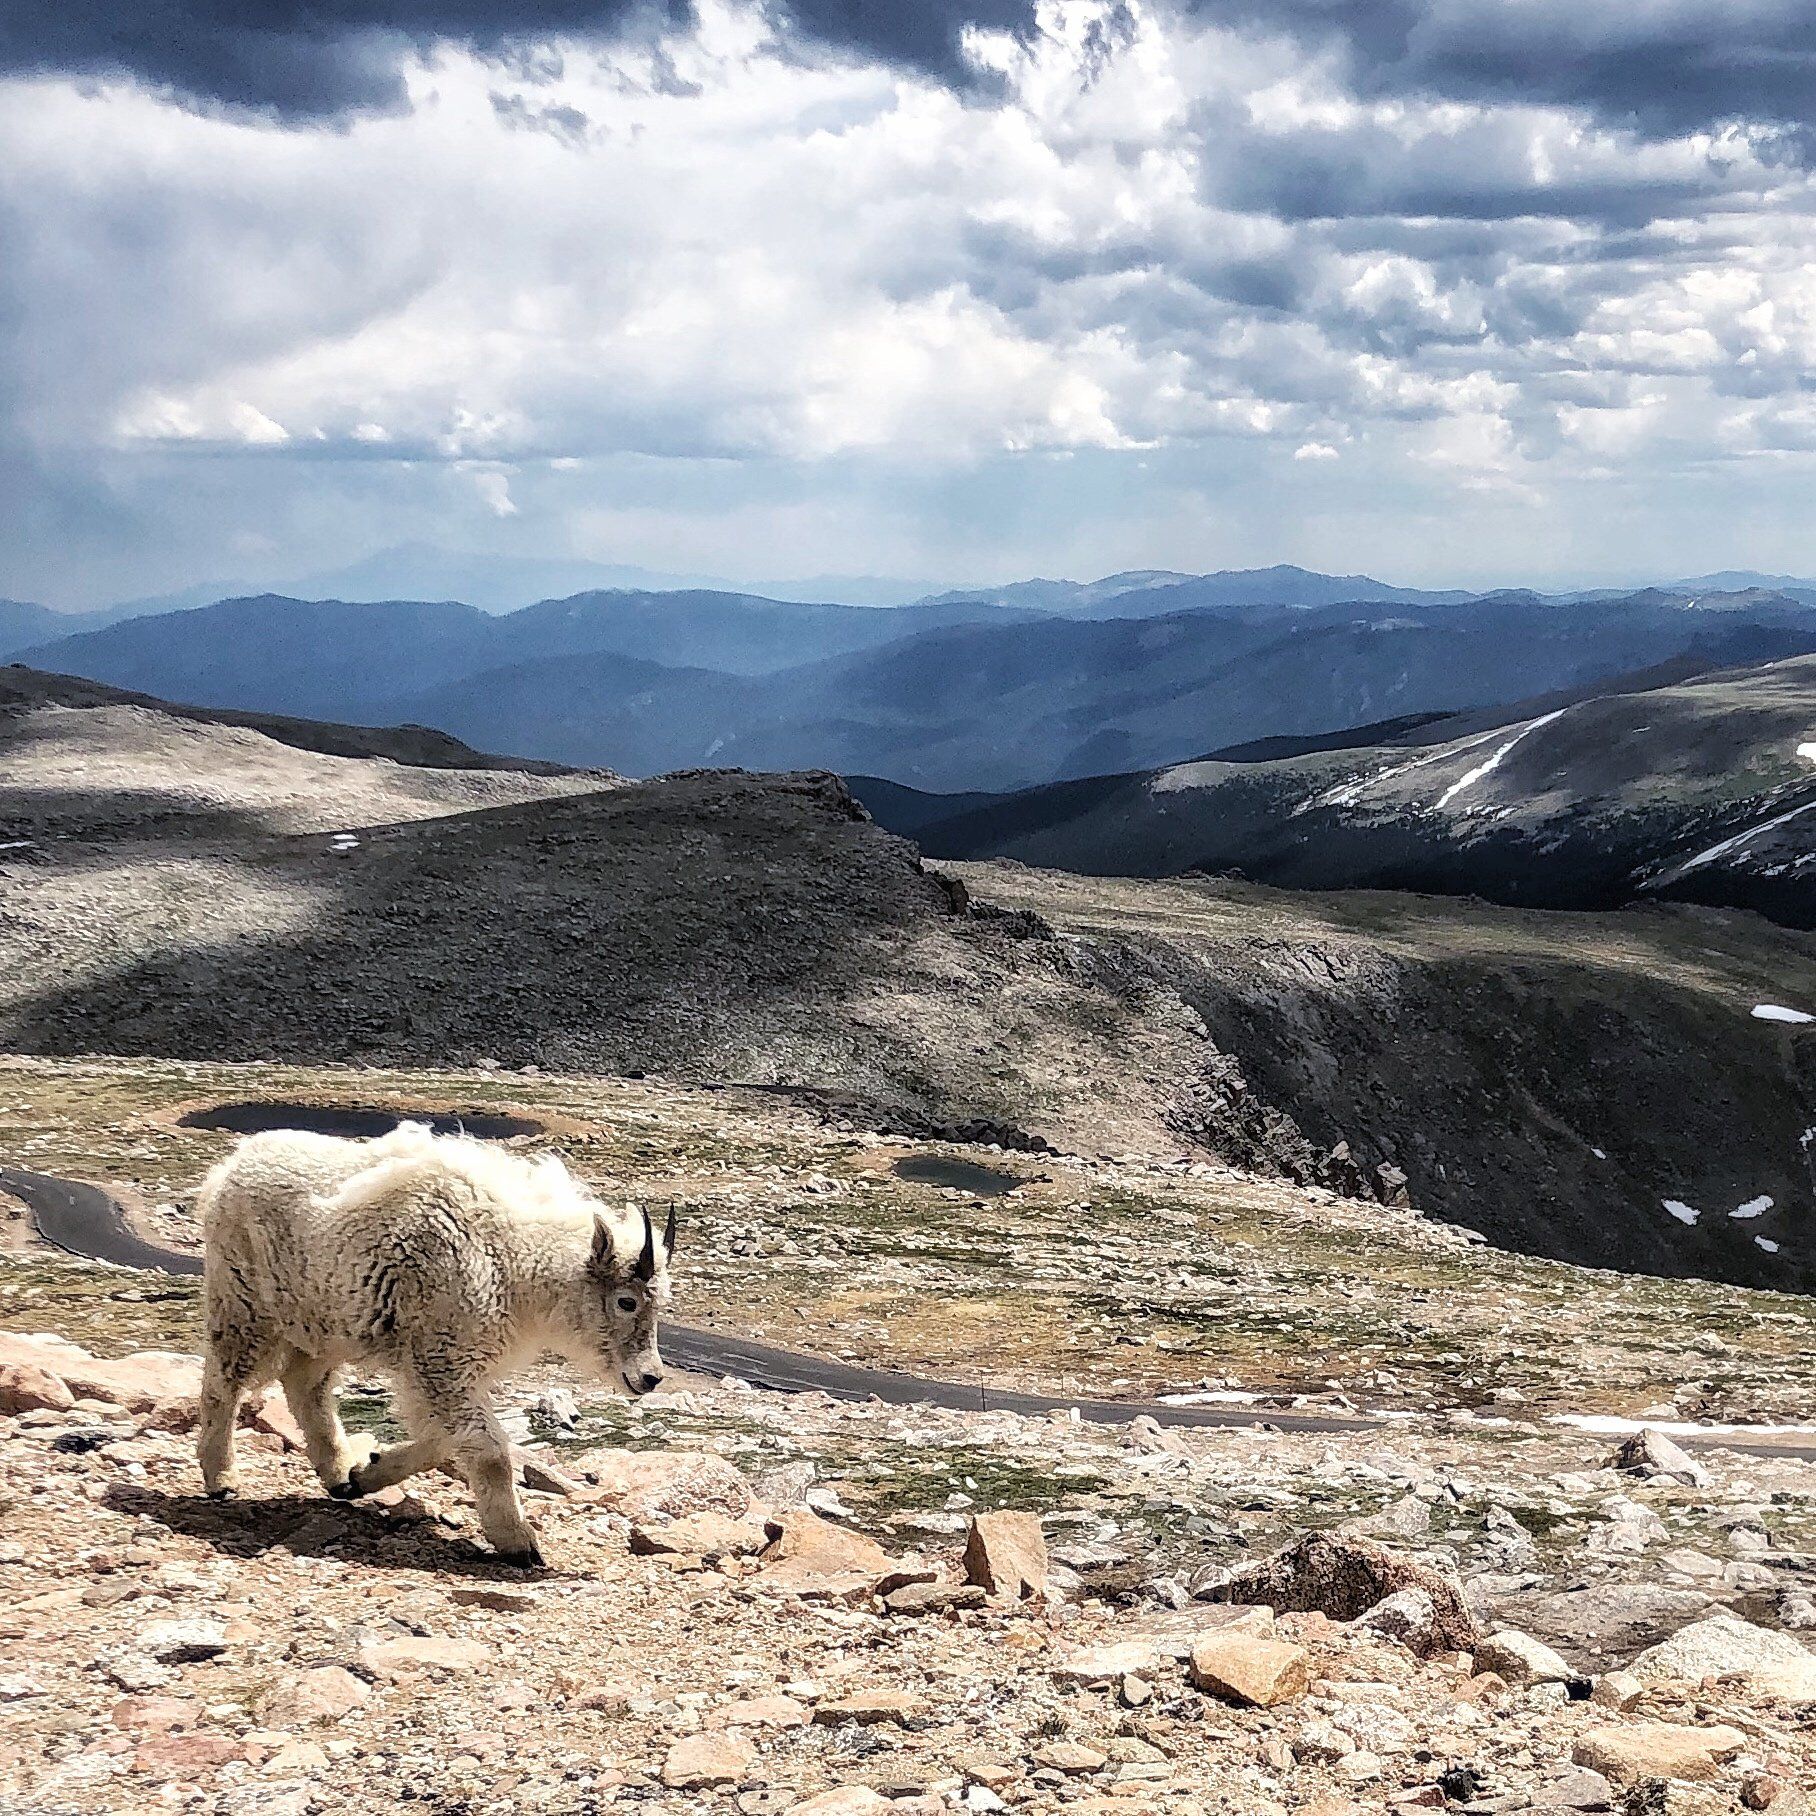 Mountain goat on Mount Evans.